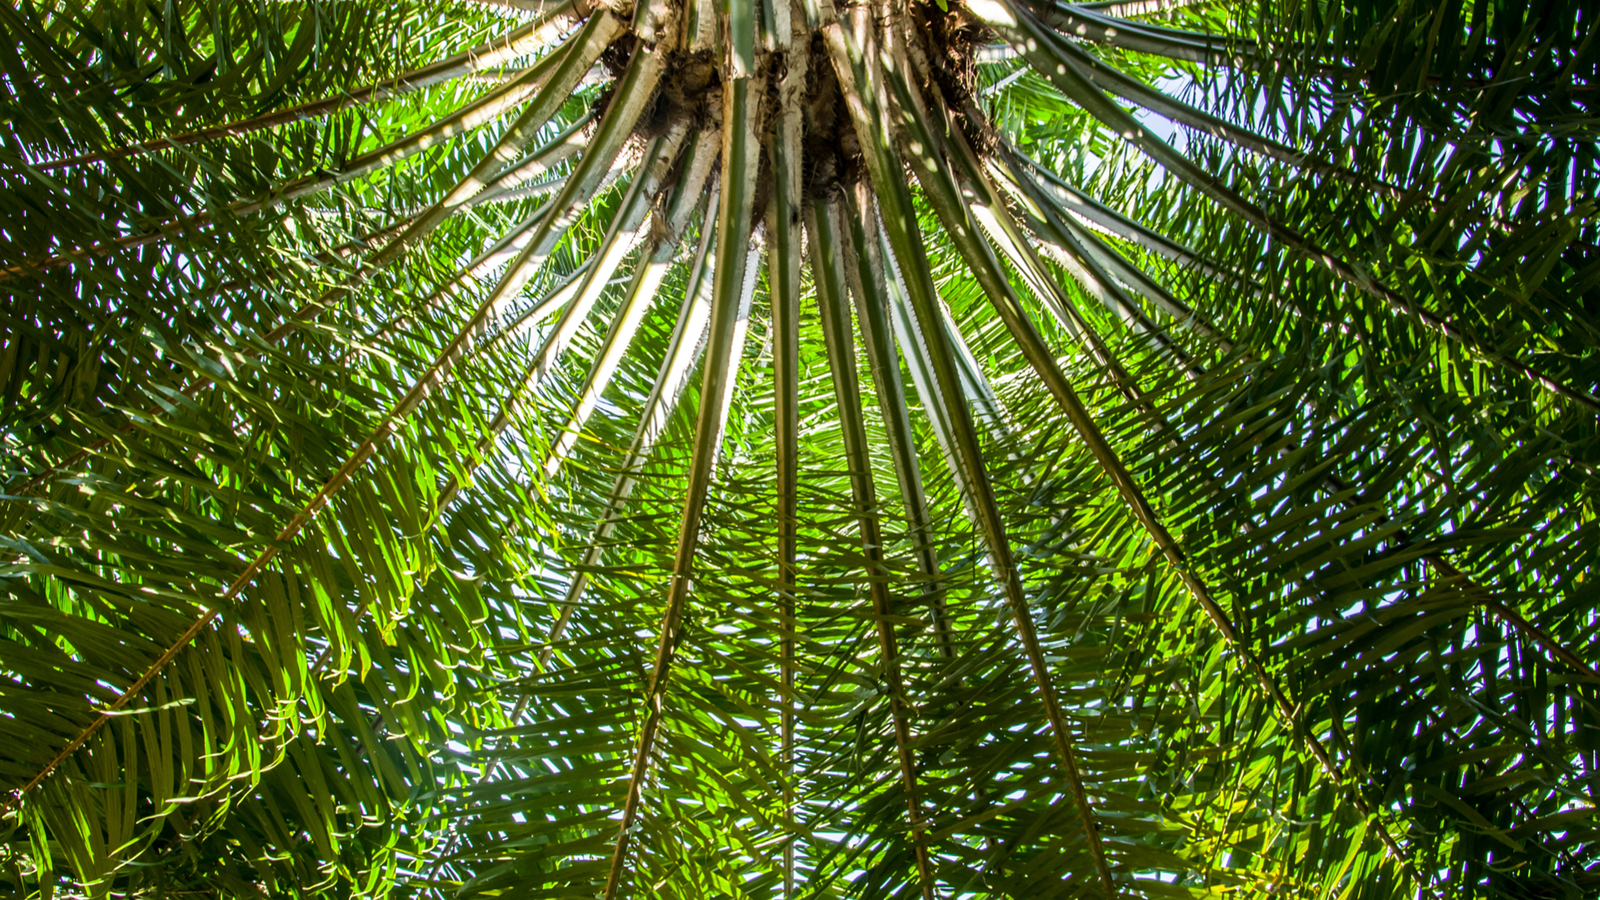 Upward shot of palm tree